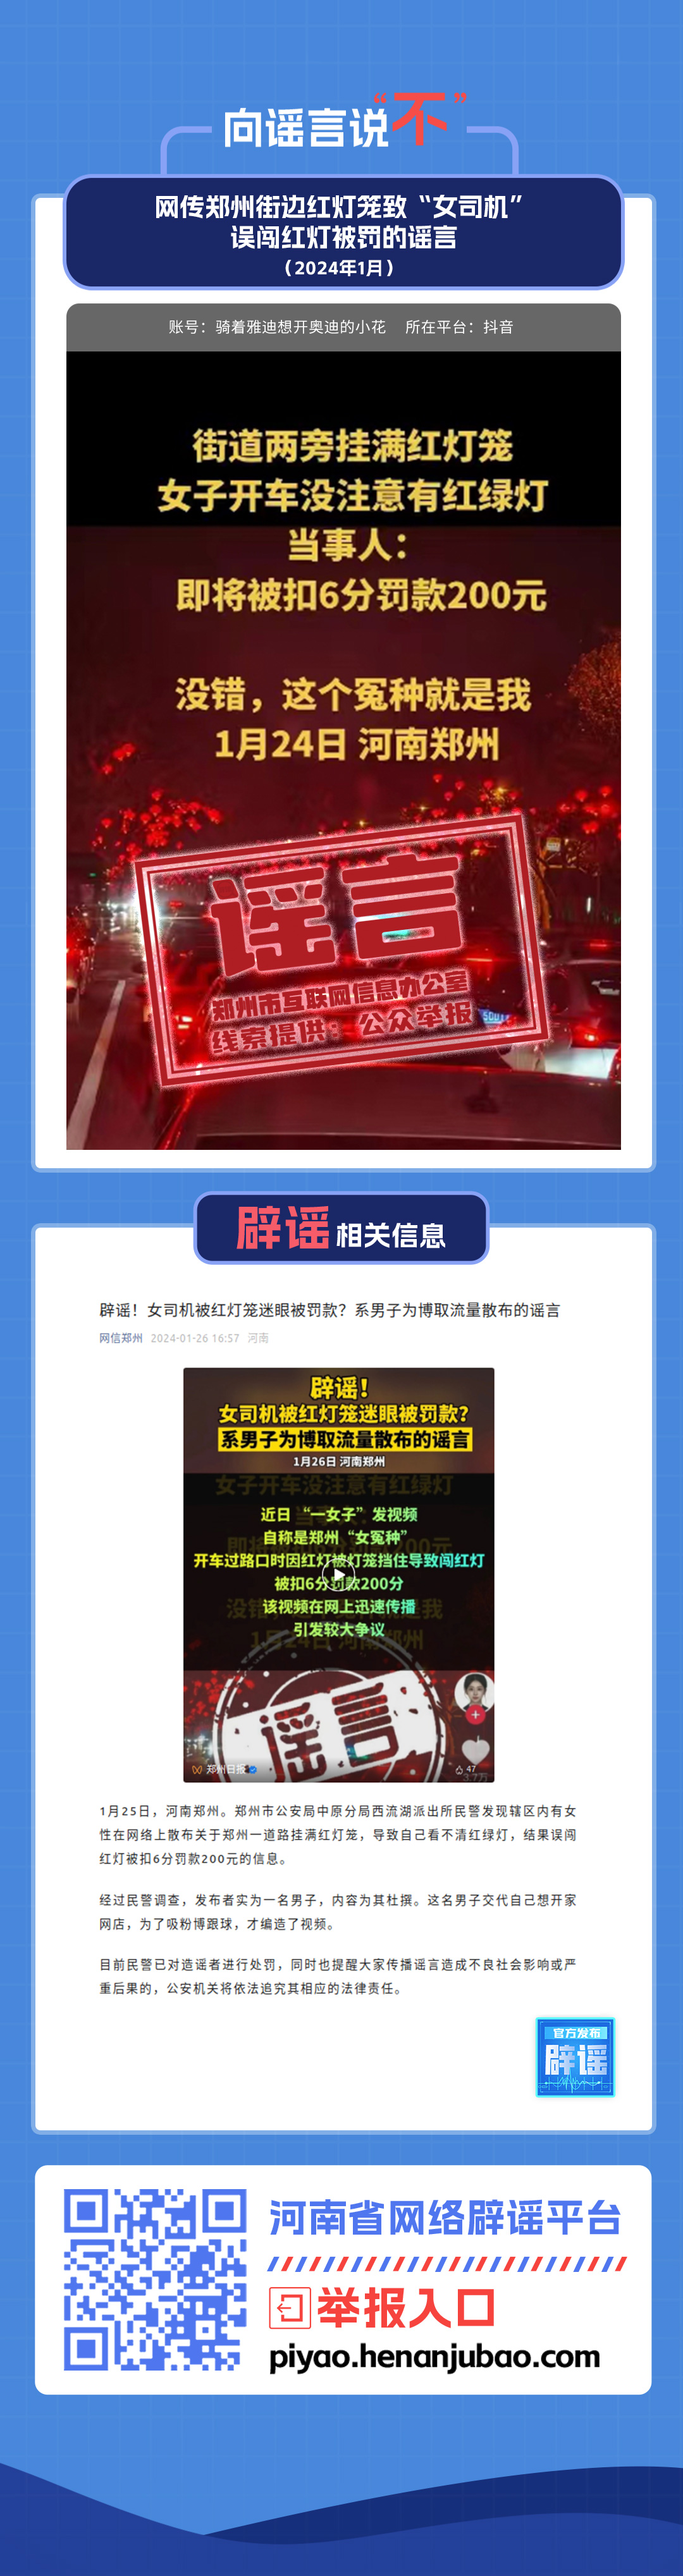 网传郑州街边红灯笼致“女司机”误闯红灯被罚的谣言